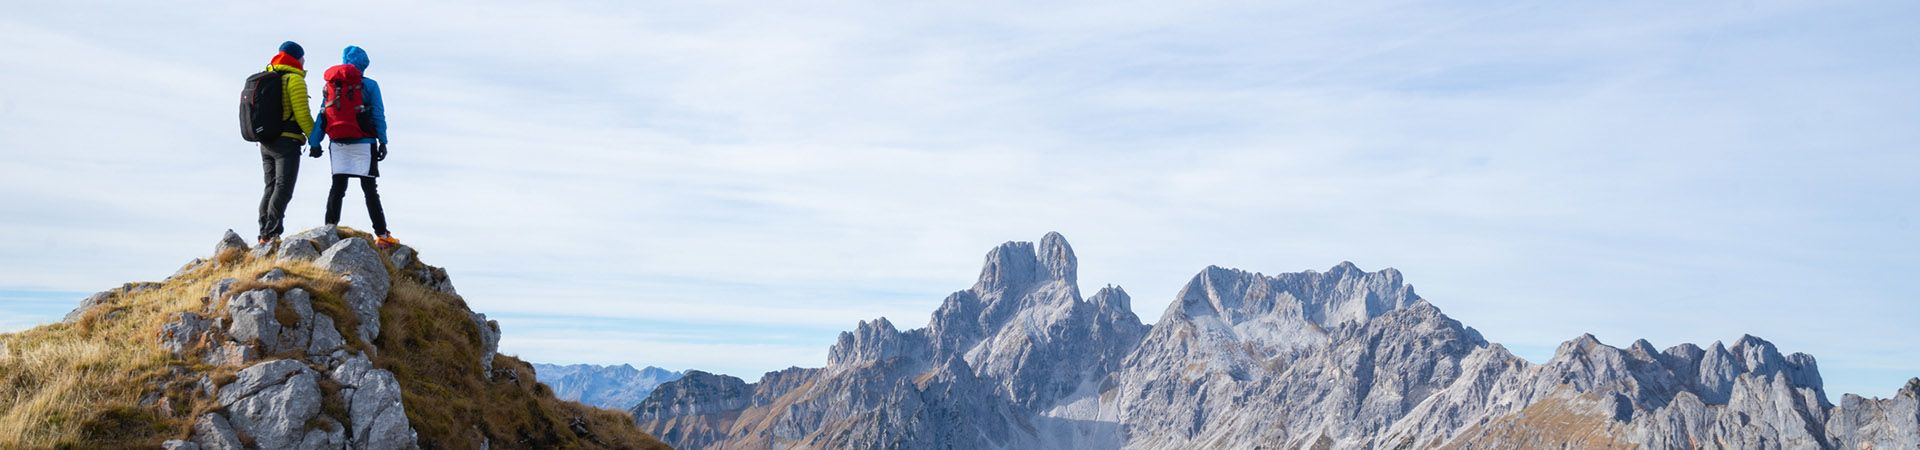 Alpinista – wspinaczka w Alpach jest często nazywana alpinizmem.